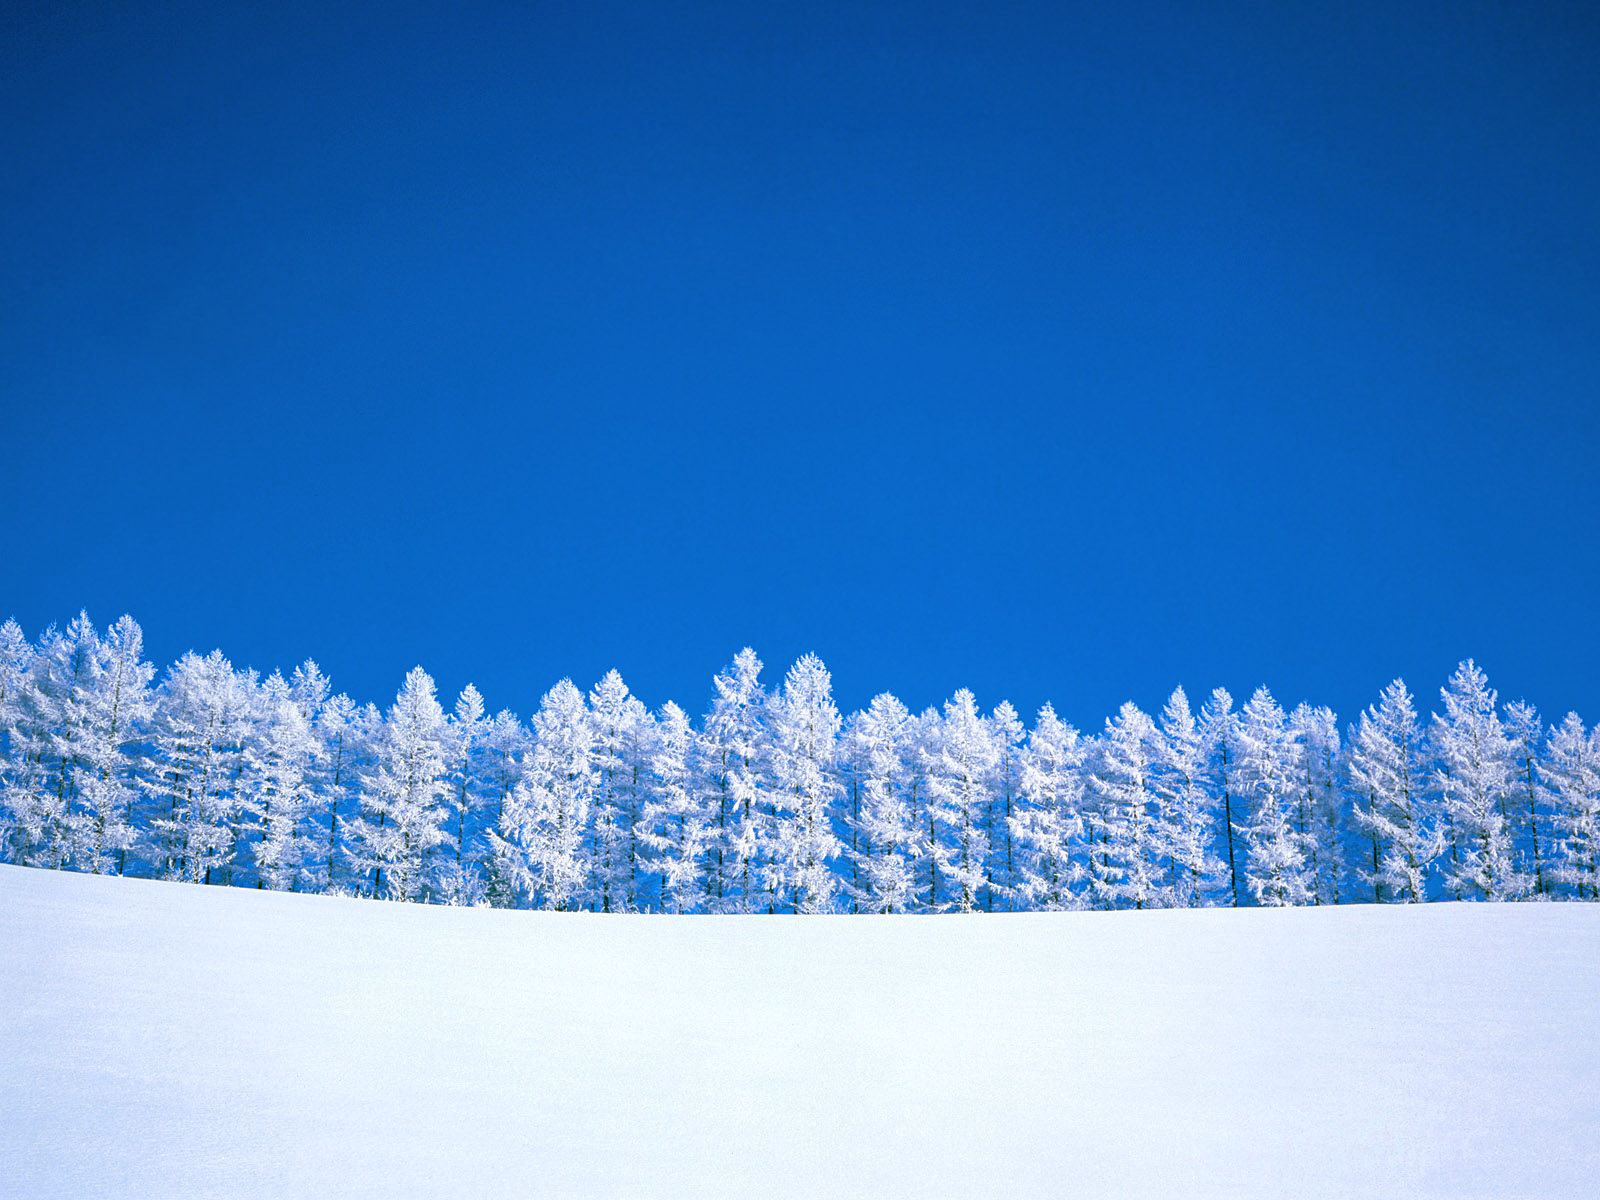 冰天雪地唯美好看的雪中美景唯美图集桌面壁纸下载第一辑-风景壁纸-壁纸下载-美桌网